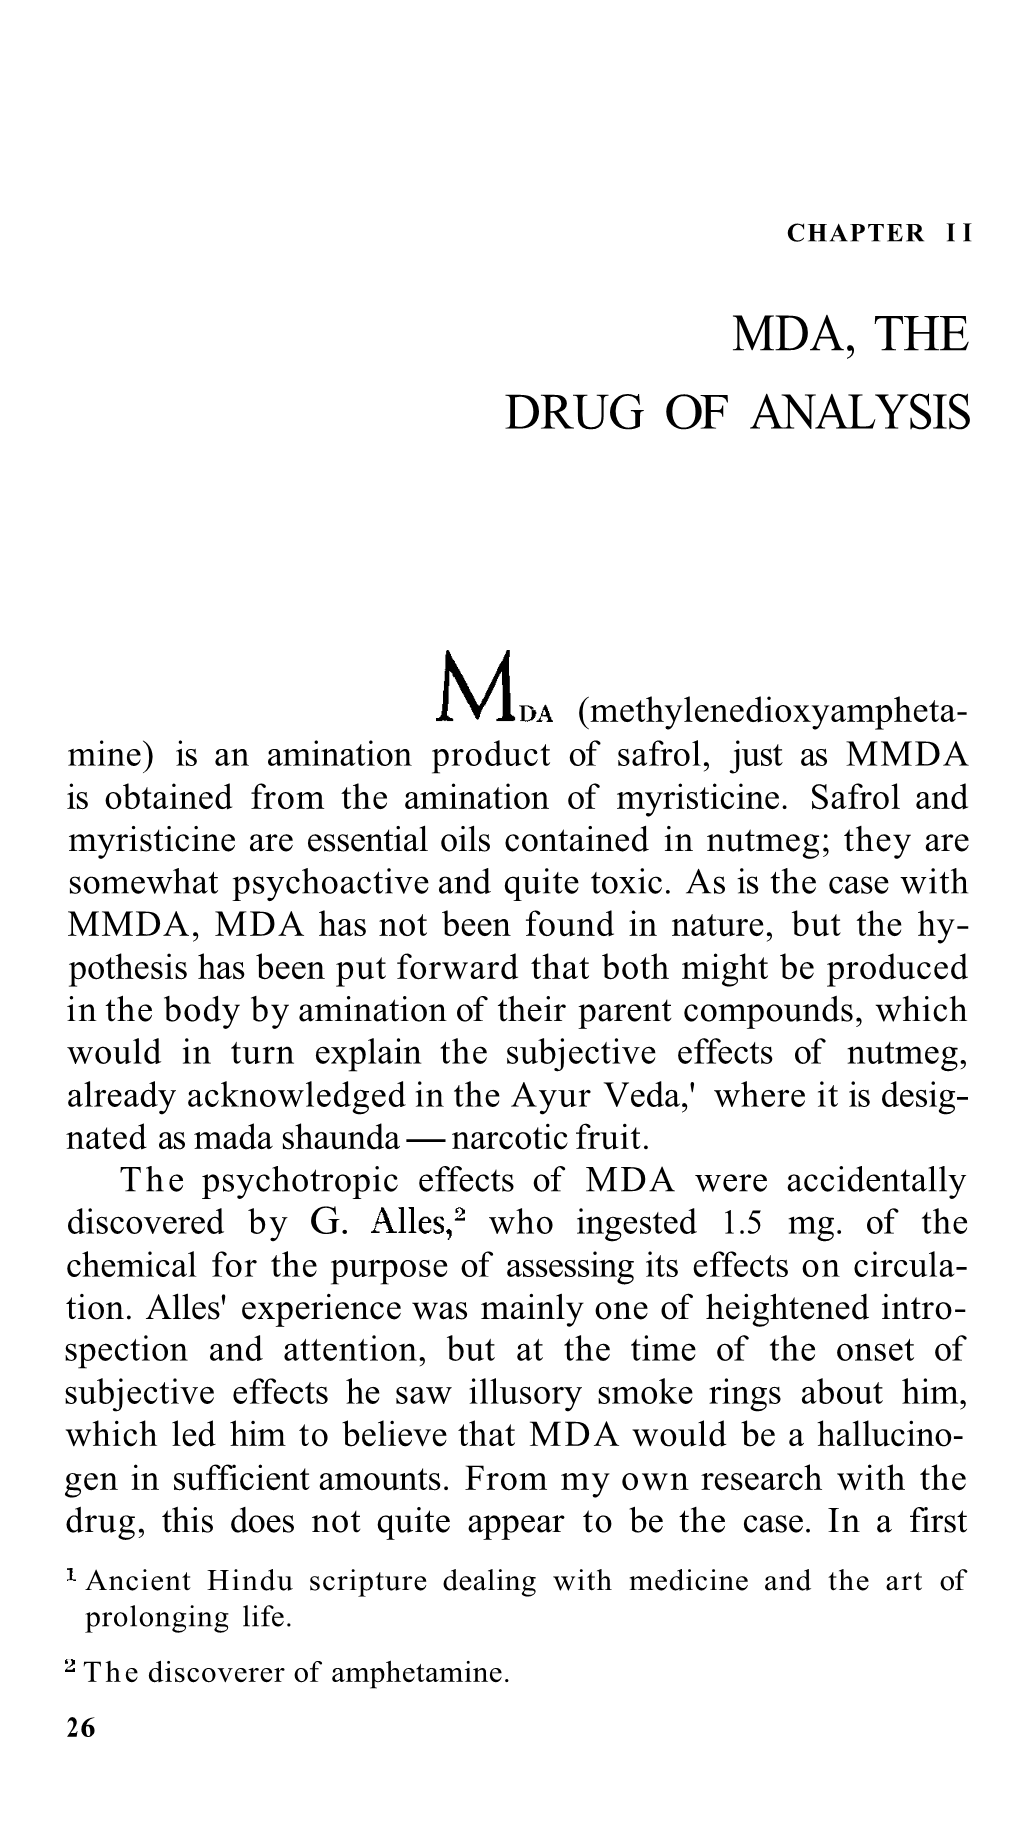 Mda, the Drug of Analysis